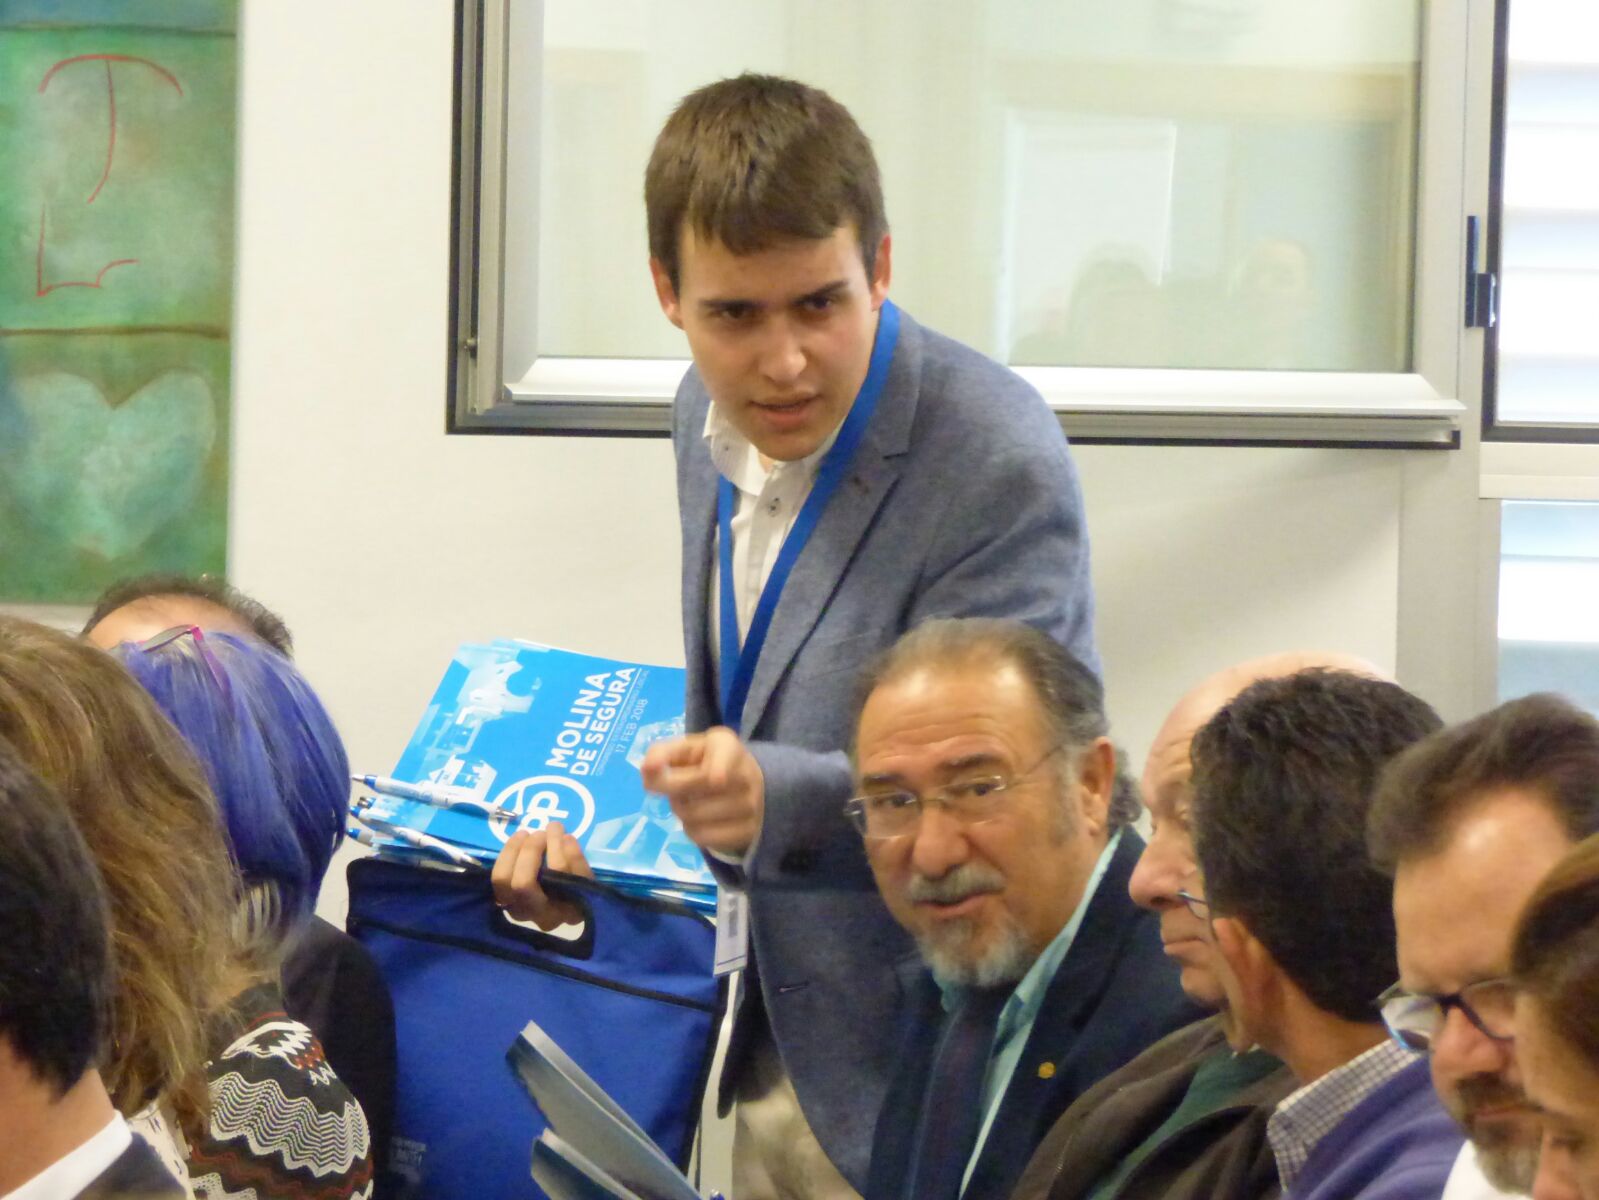 Los militantes del partido votan entre el economista José María Vicente Arnaldos o el abogado José Ángel Alfonso Hernández para la presidencia local del partido